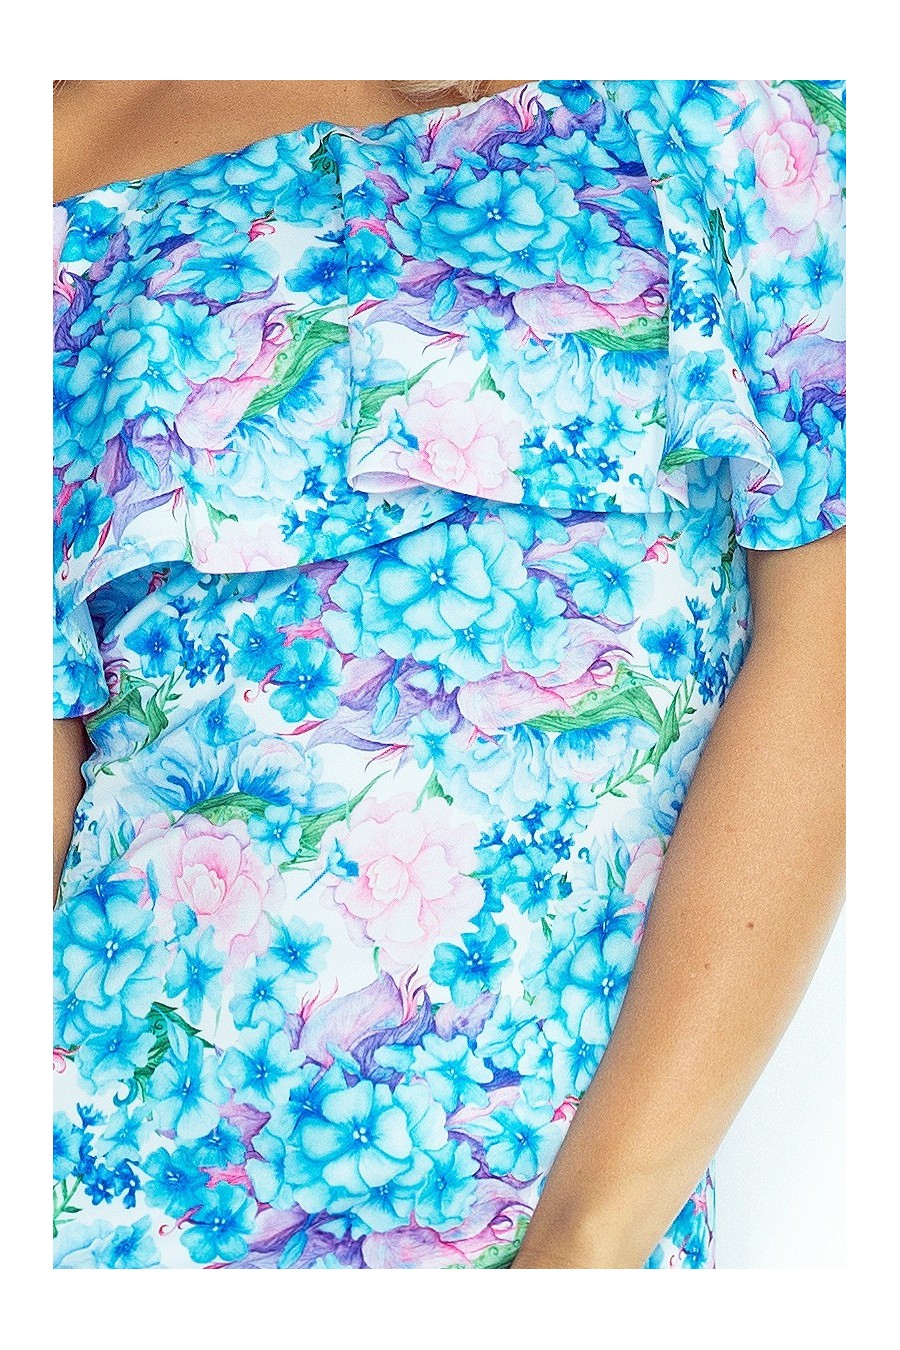 Šaty s límcem - modré květy 138-5